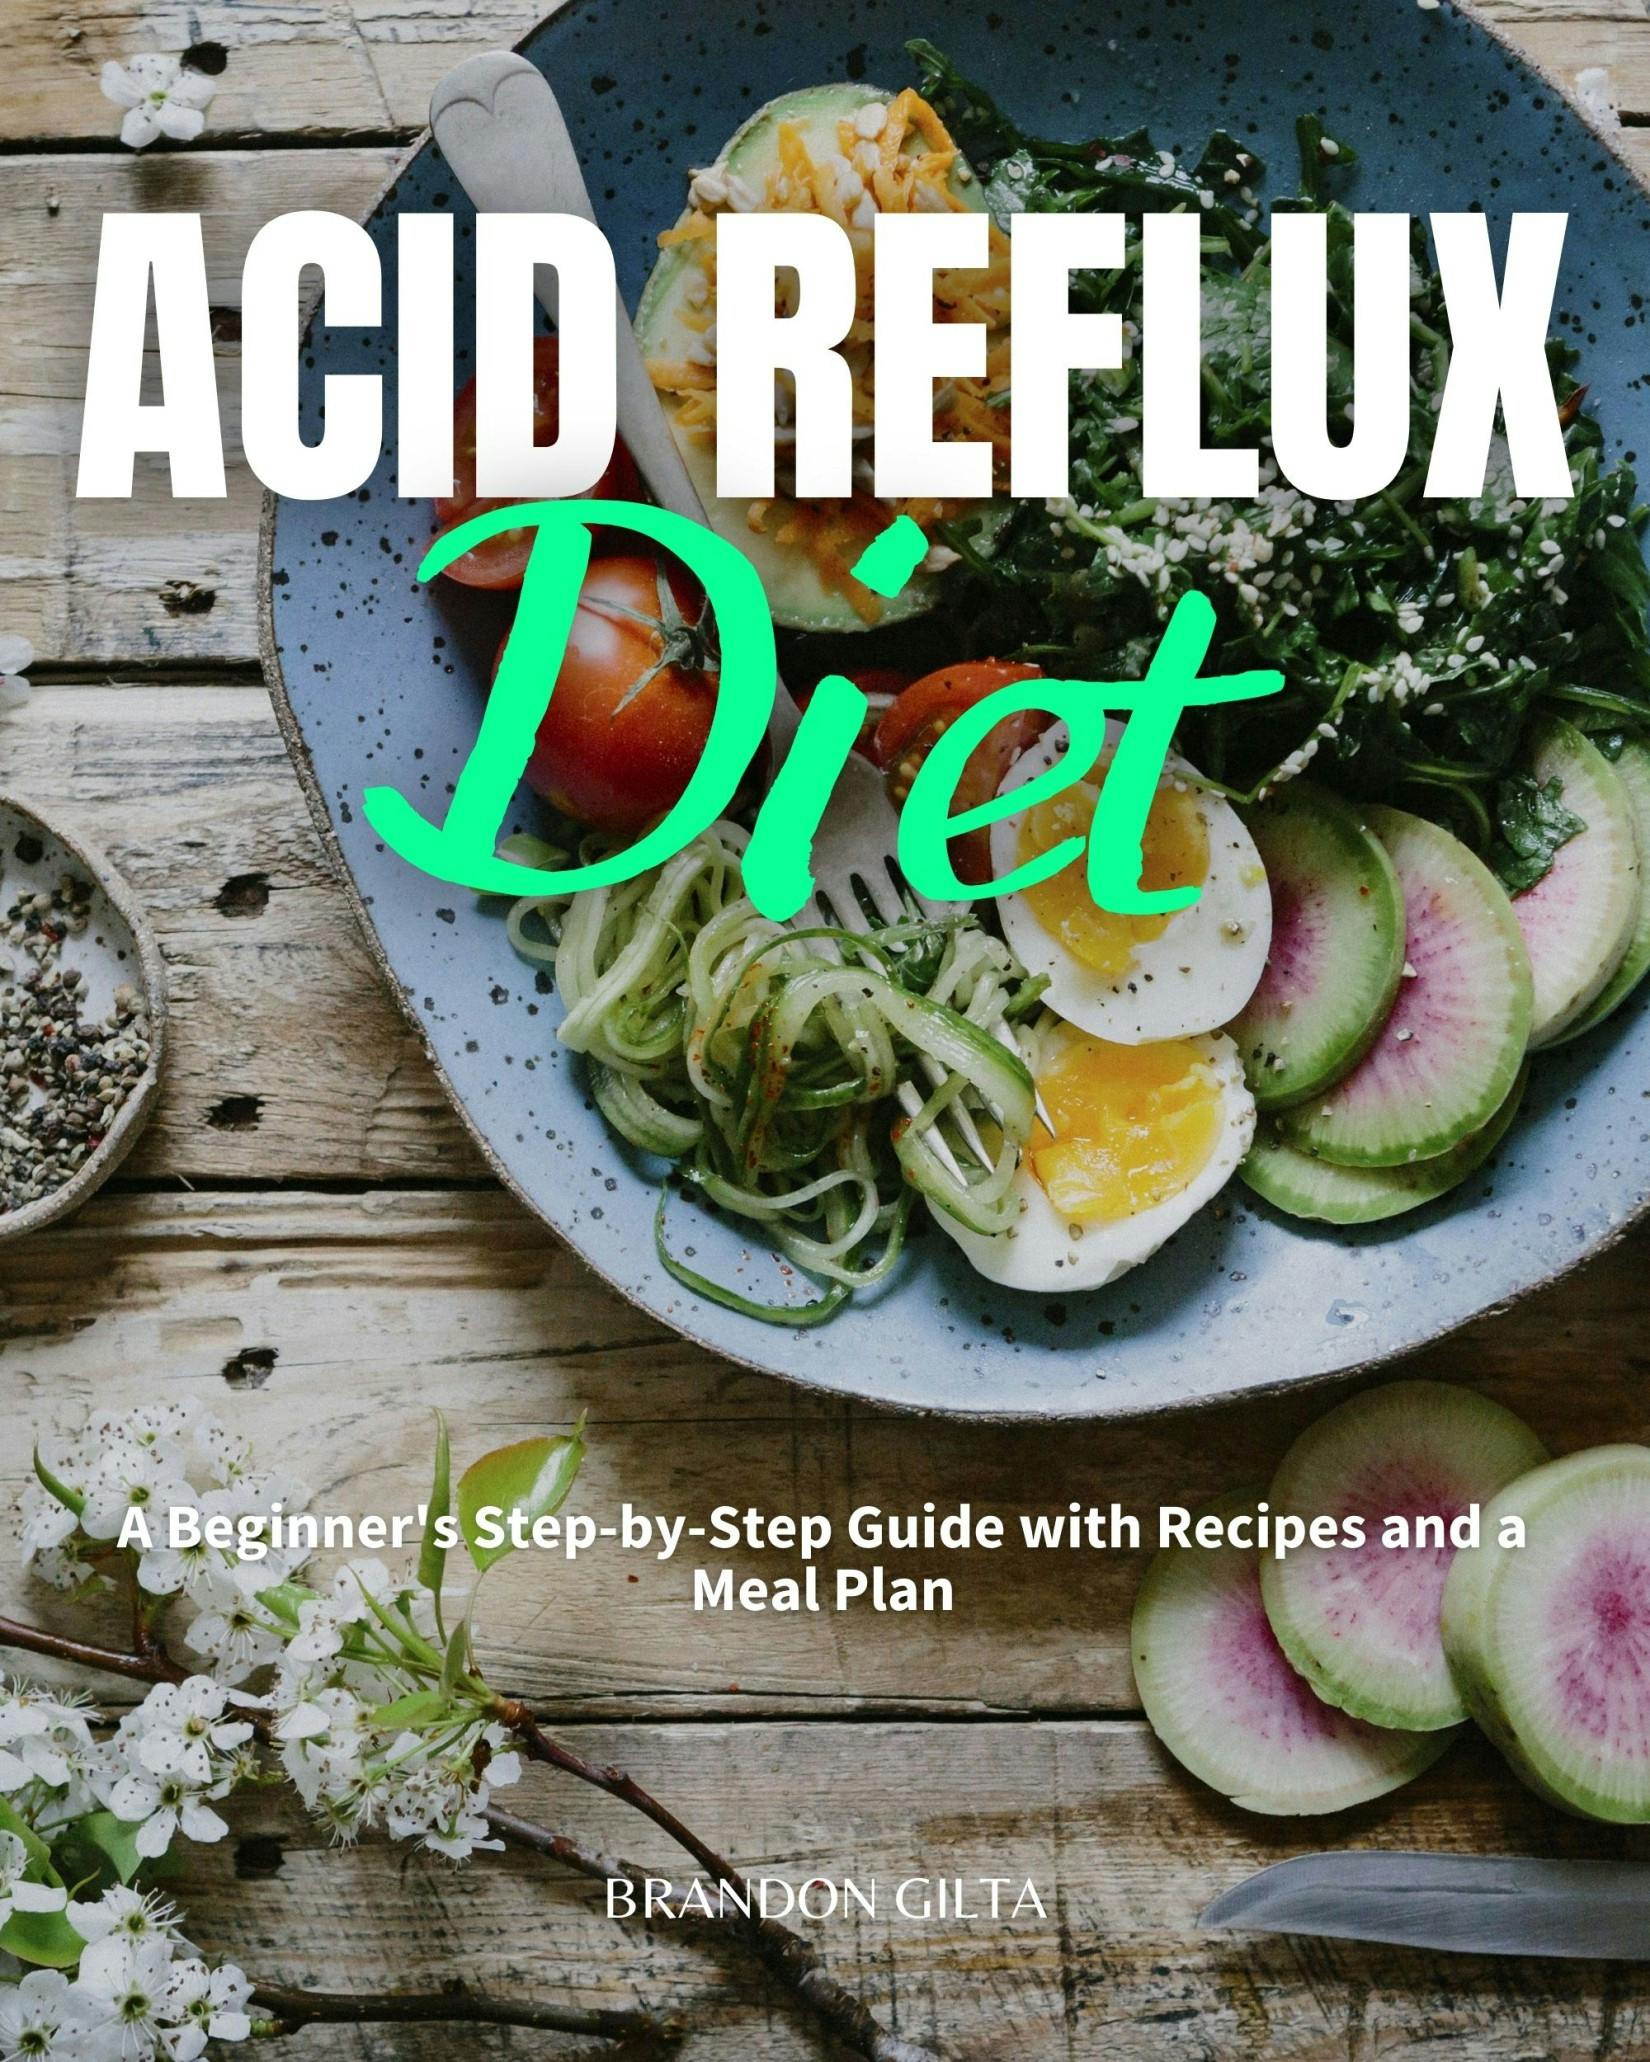 Acid Reflux Diet - Brandon Gilta